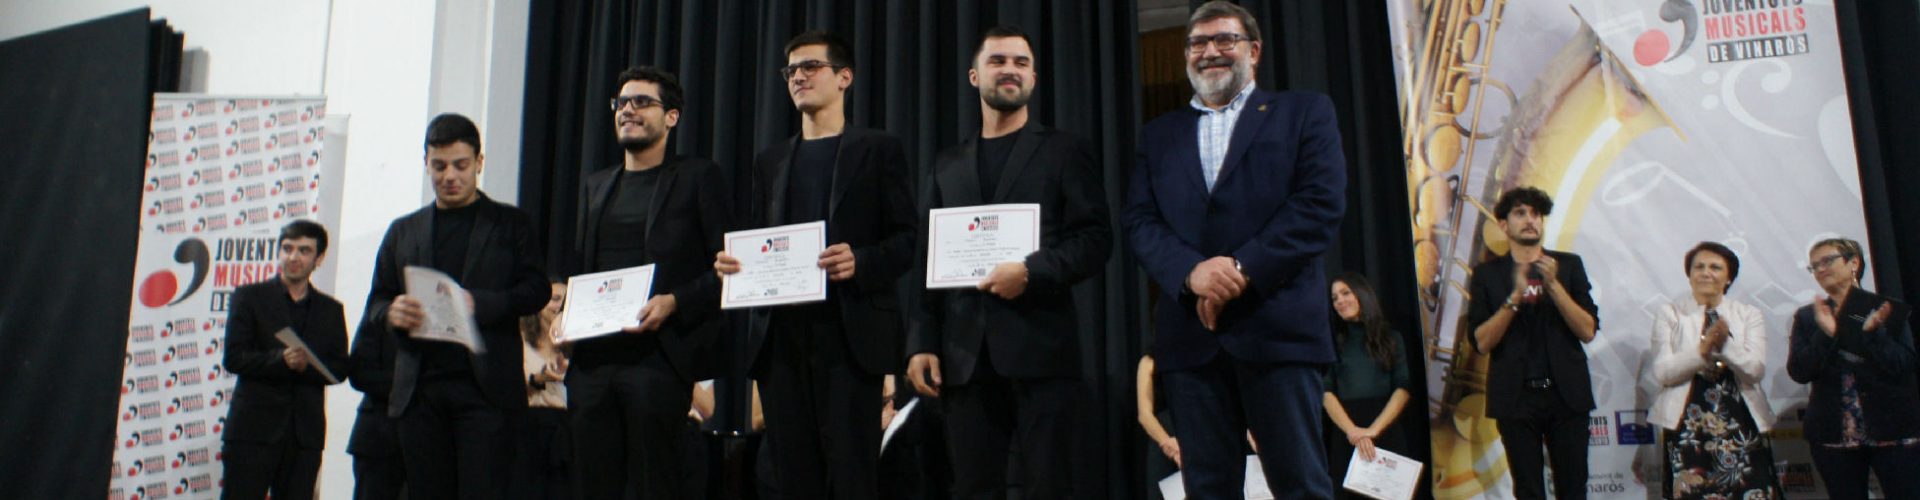 Un gran final per al XVII Concurs Internacional Música de Cambra Ciutat de Vinaròs